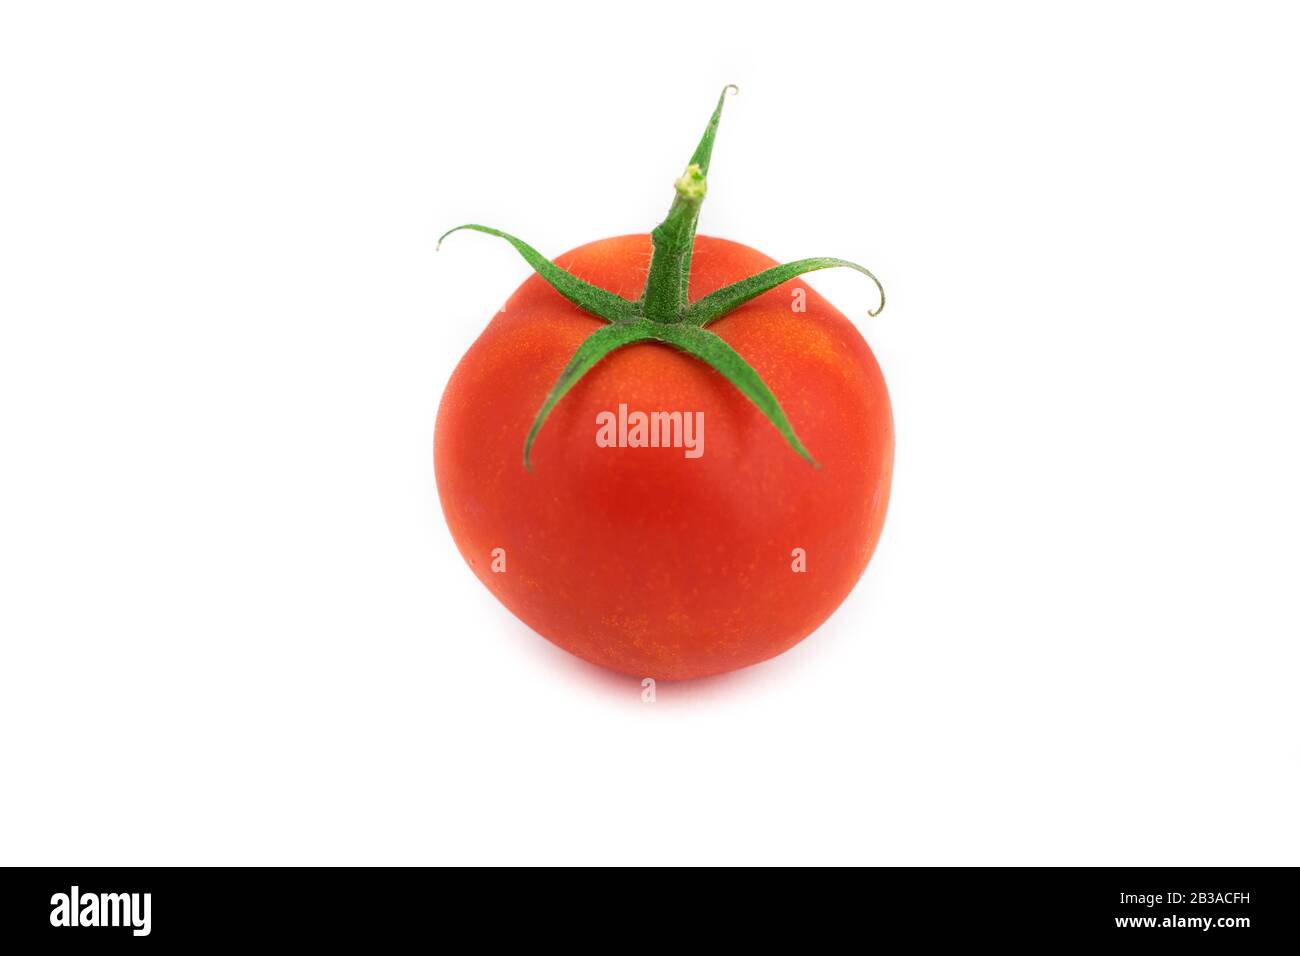 Ripe fresh organic tomato isolated on white background. Stock Photo